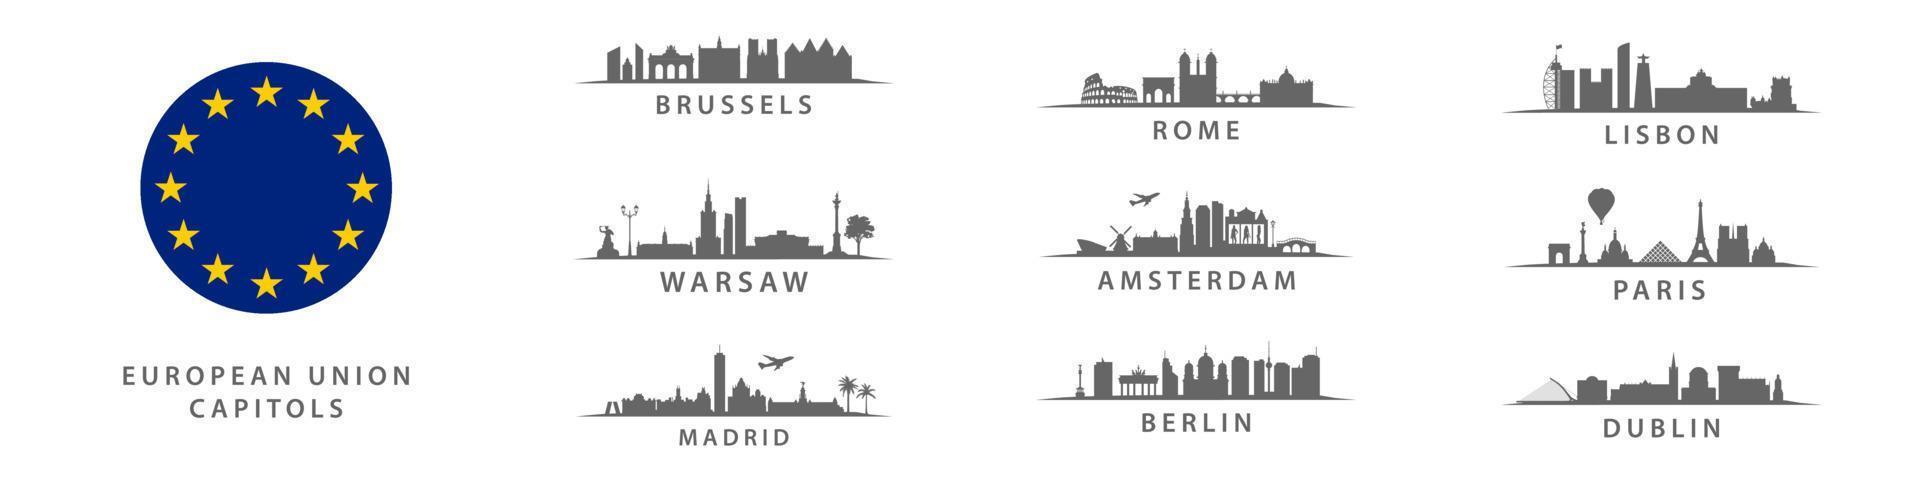 samling av europeisk union huvudstäder, stor stad på gammal kontinent, Viktig metropol uppsättning panorama vektor